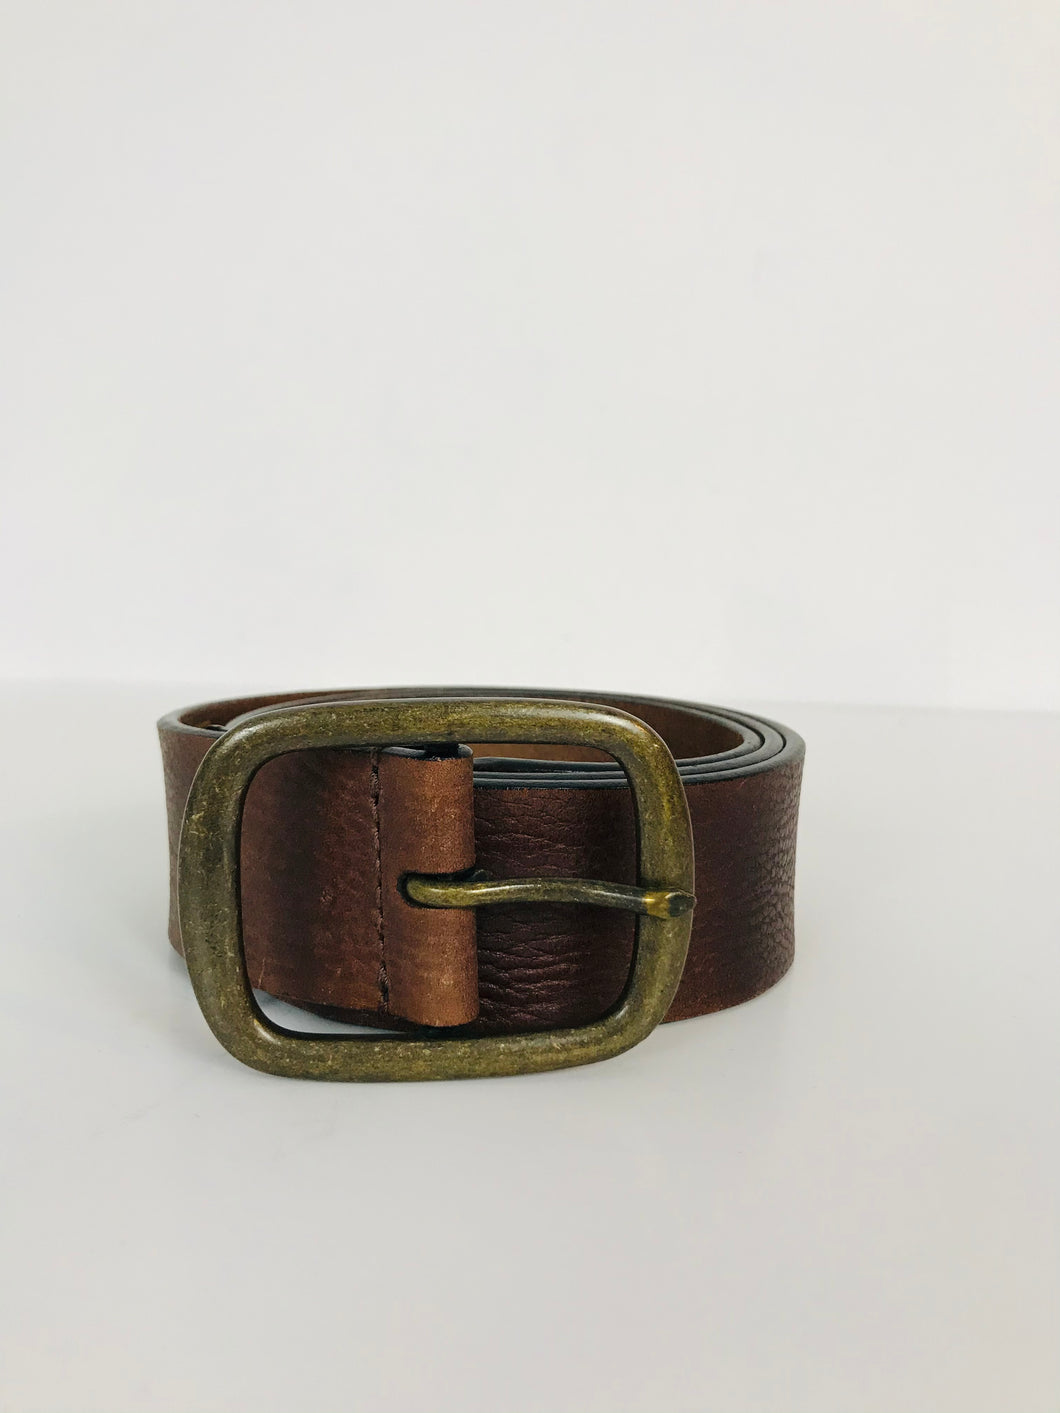 Marks & Spencer 100% Leather Belt | W1.5 L37.5 | Brown